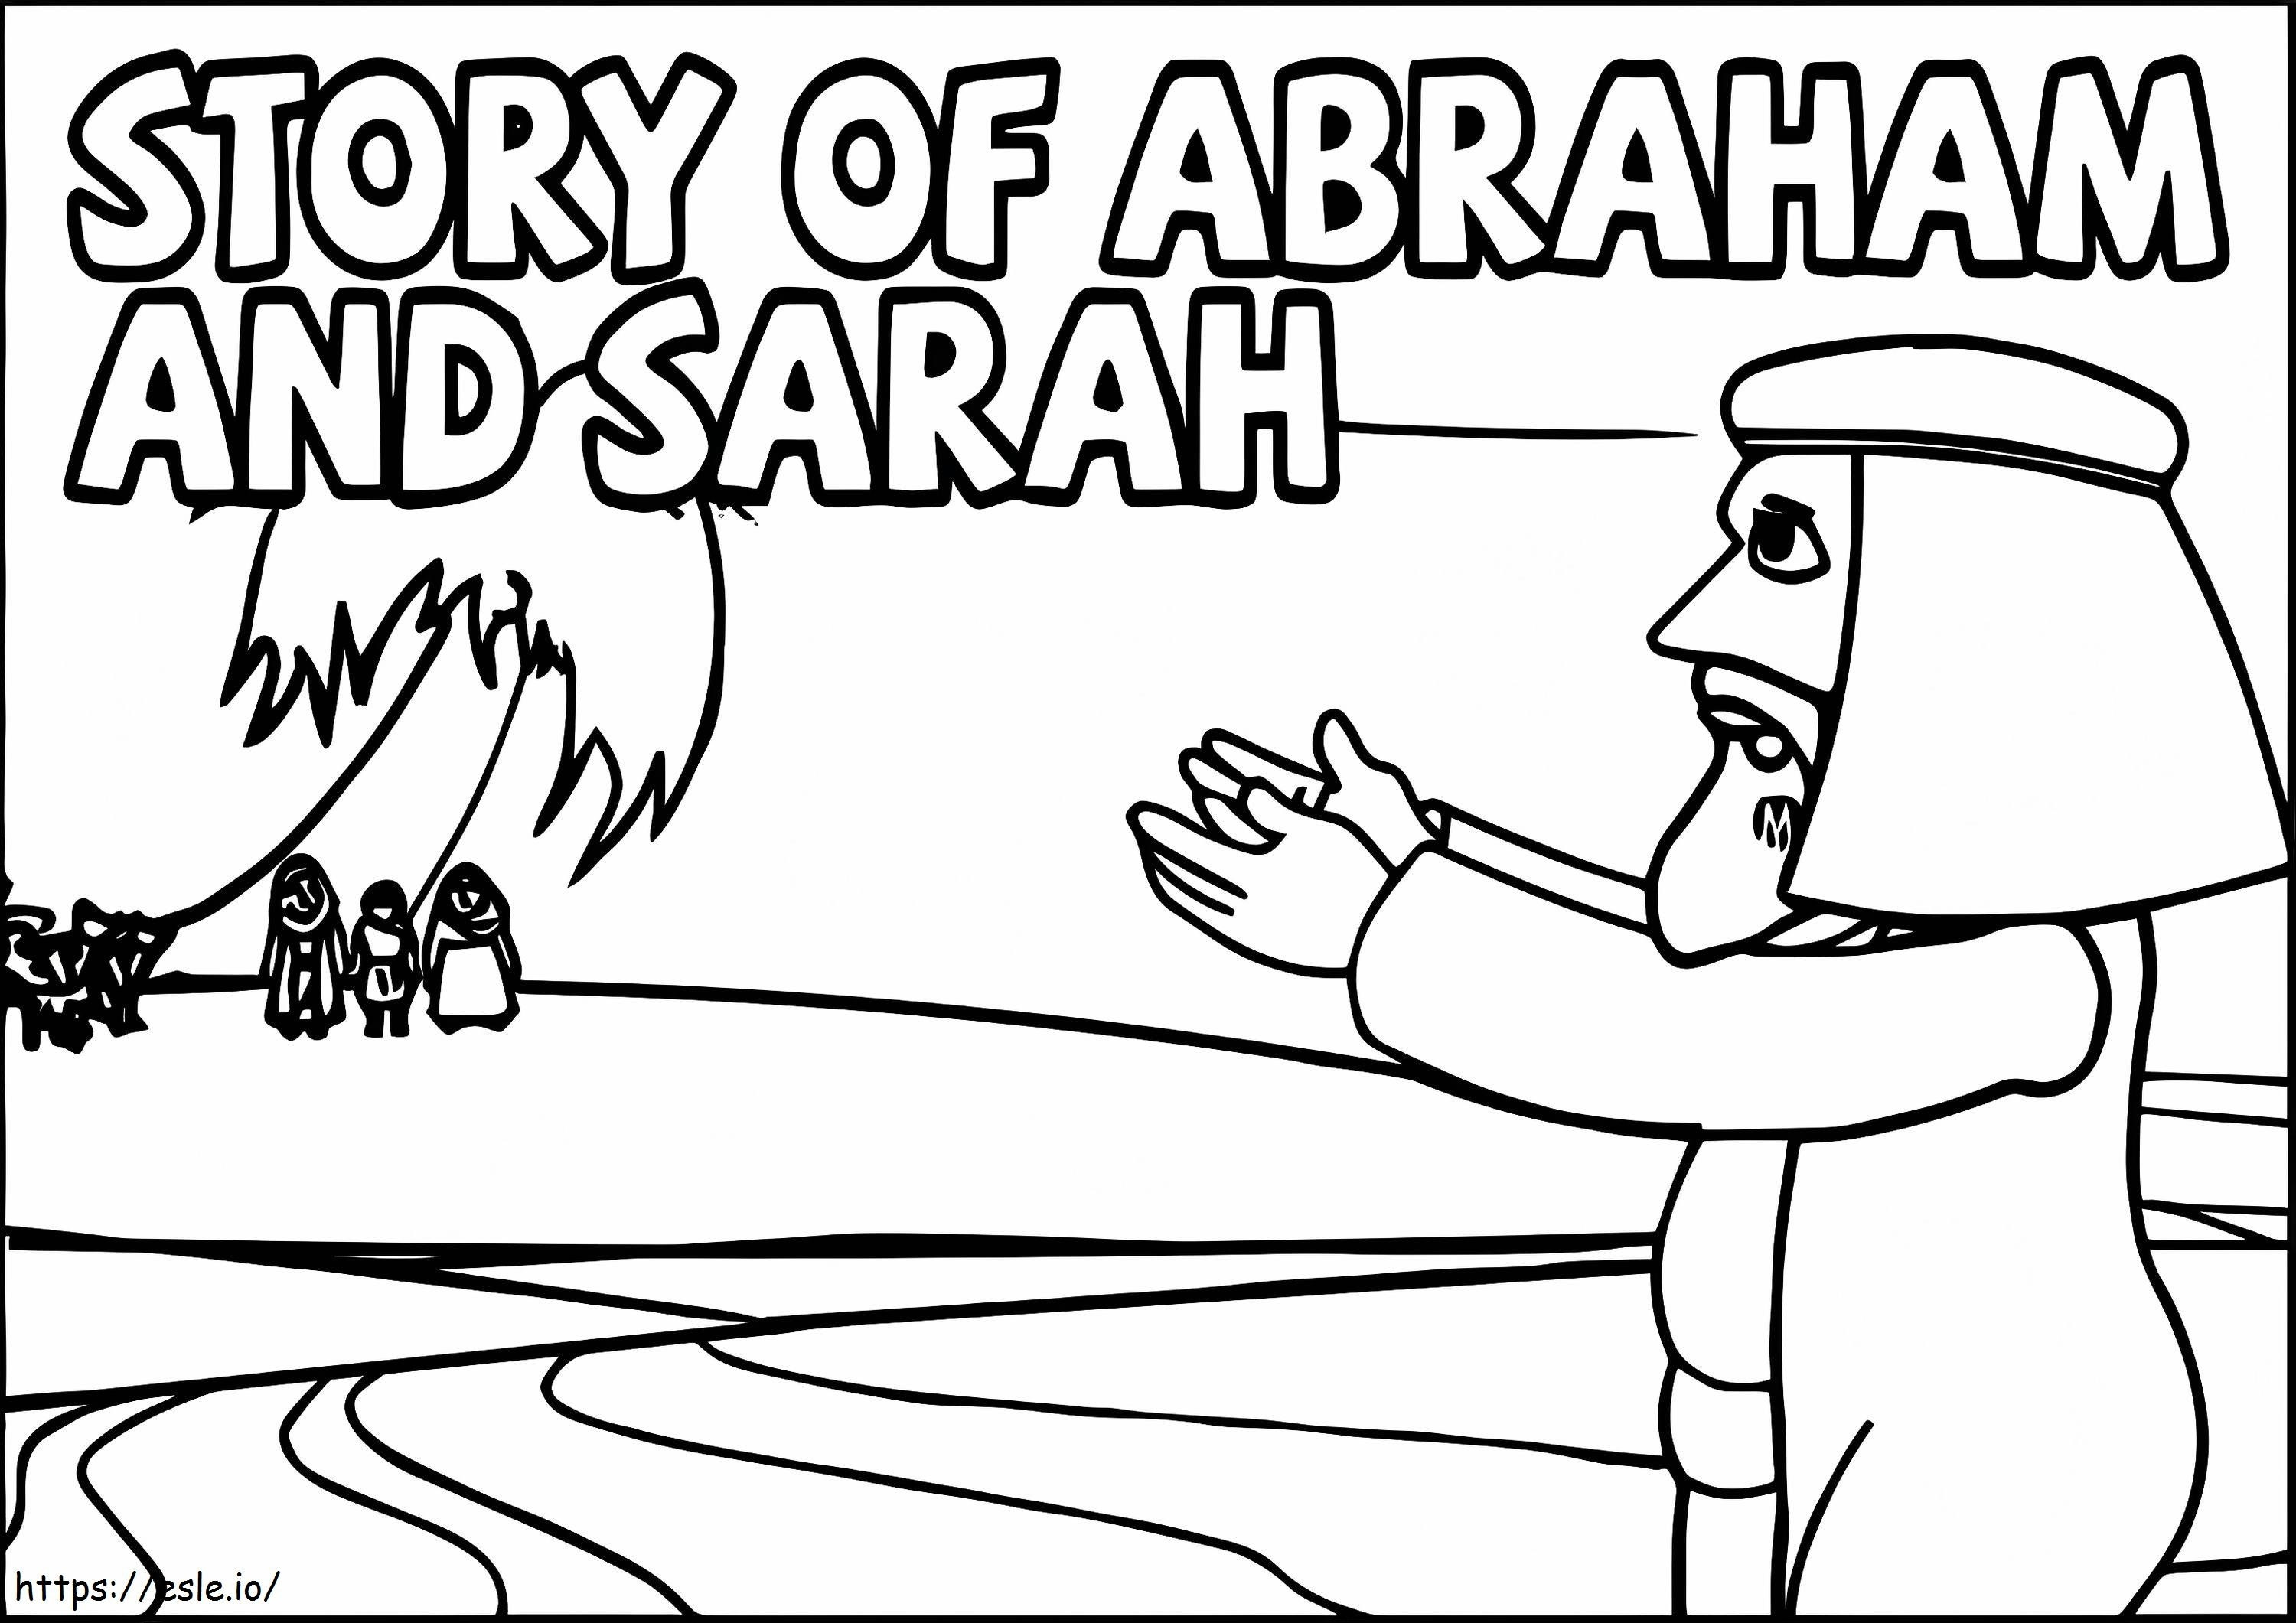 Historia de Abraham y Sara para colorear